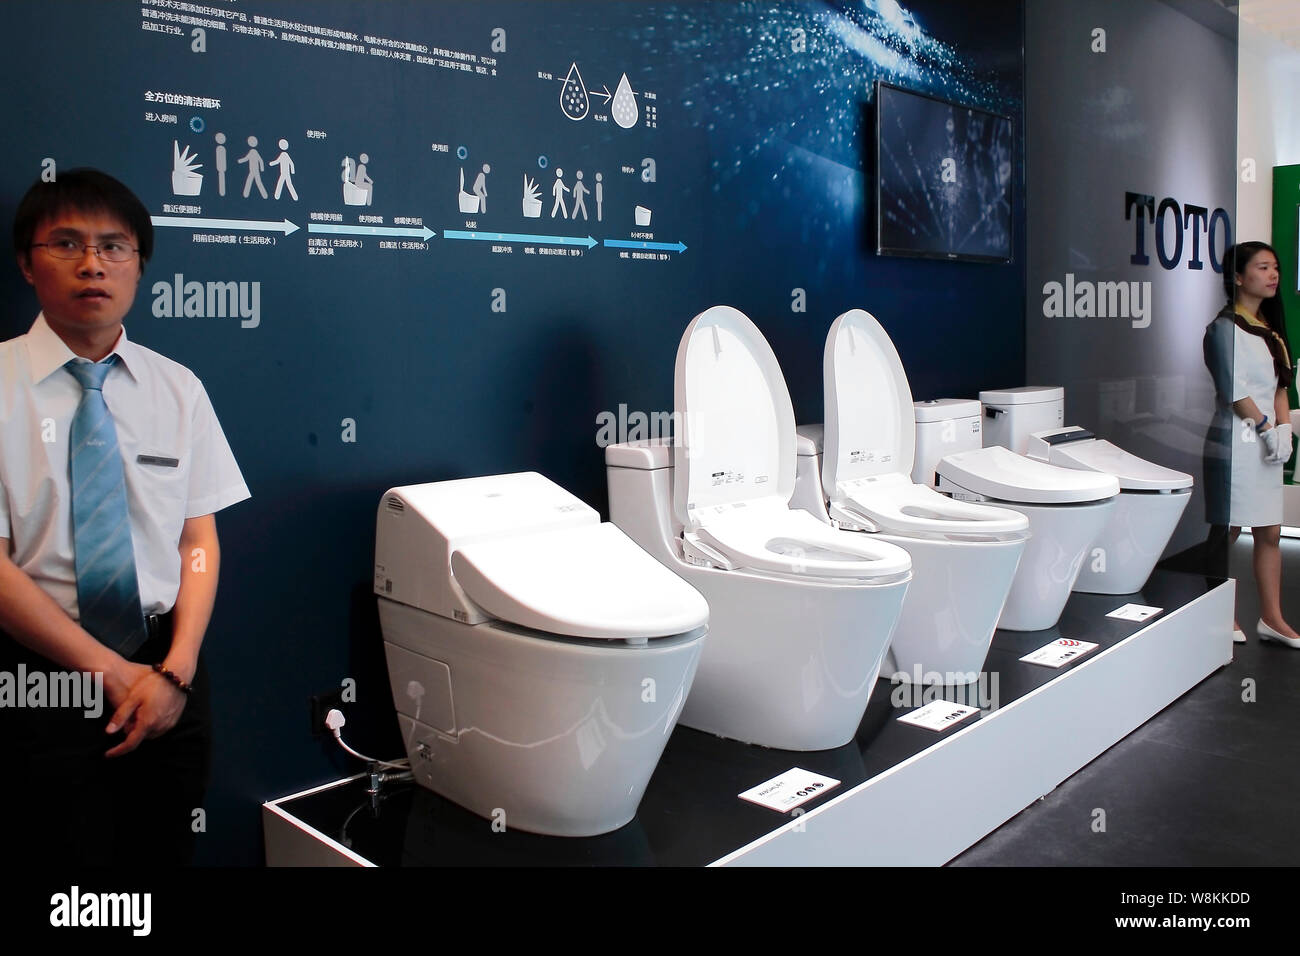 Tirar la cadena de los baños fotografías e imágenes de alta resolución -  Alamy